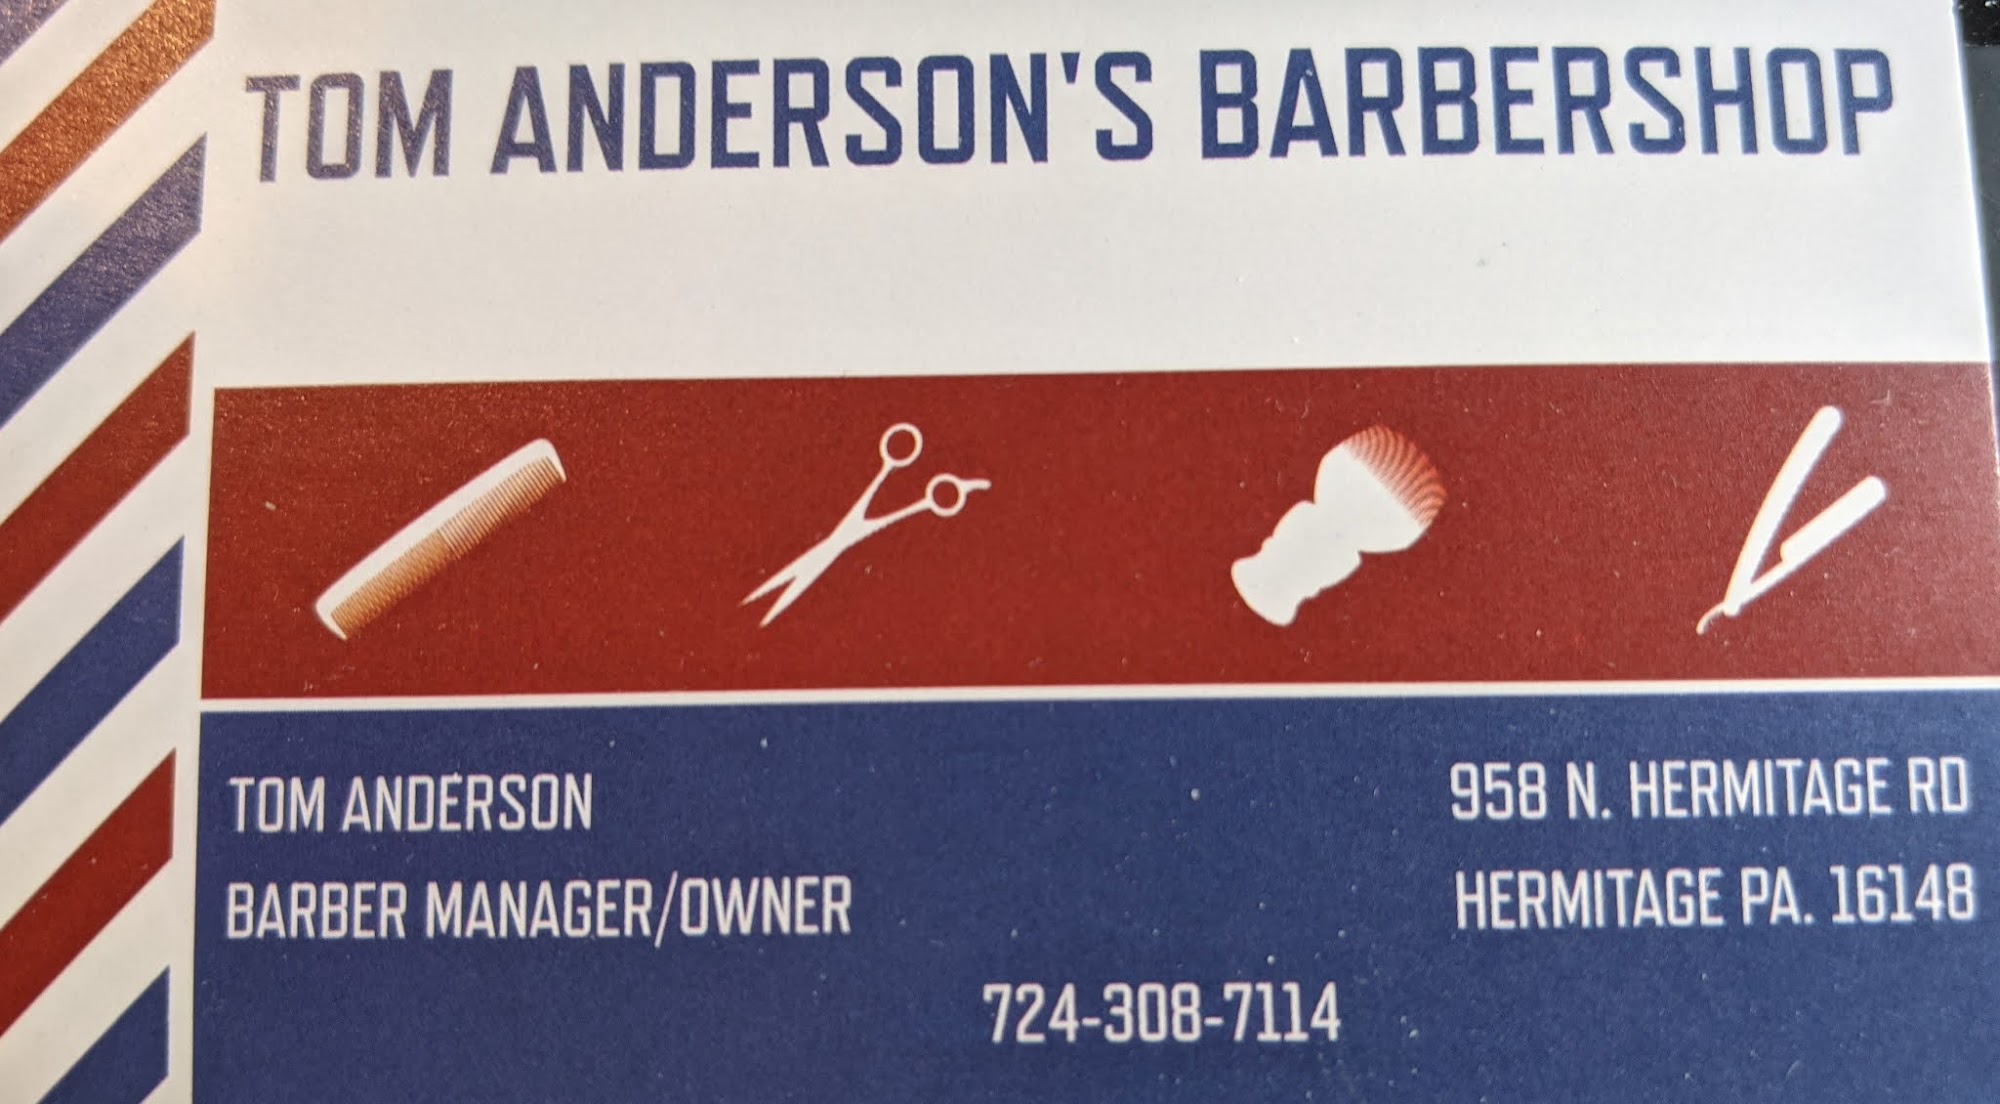 Tom Anderson's Barbershop